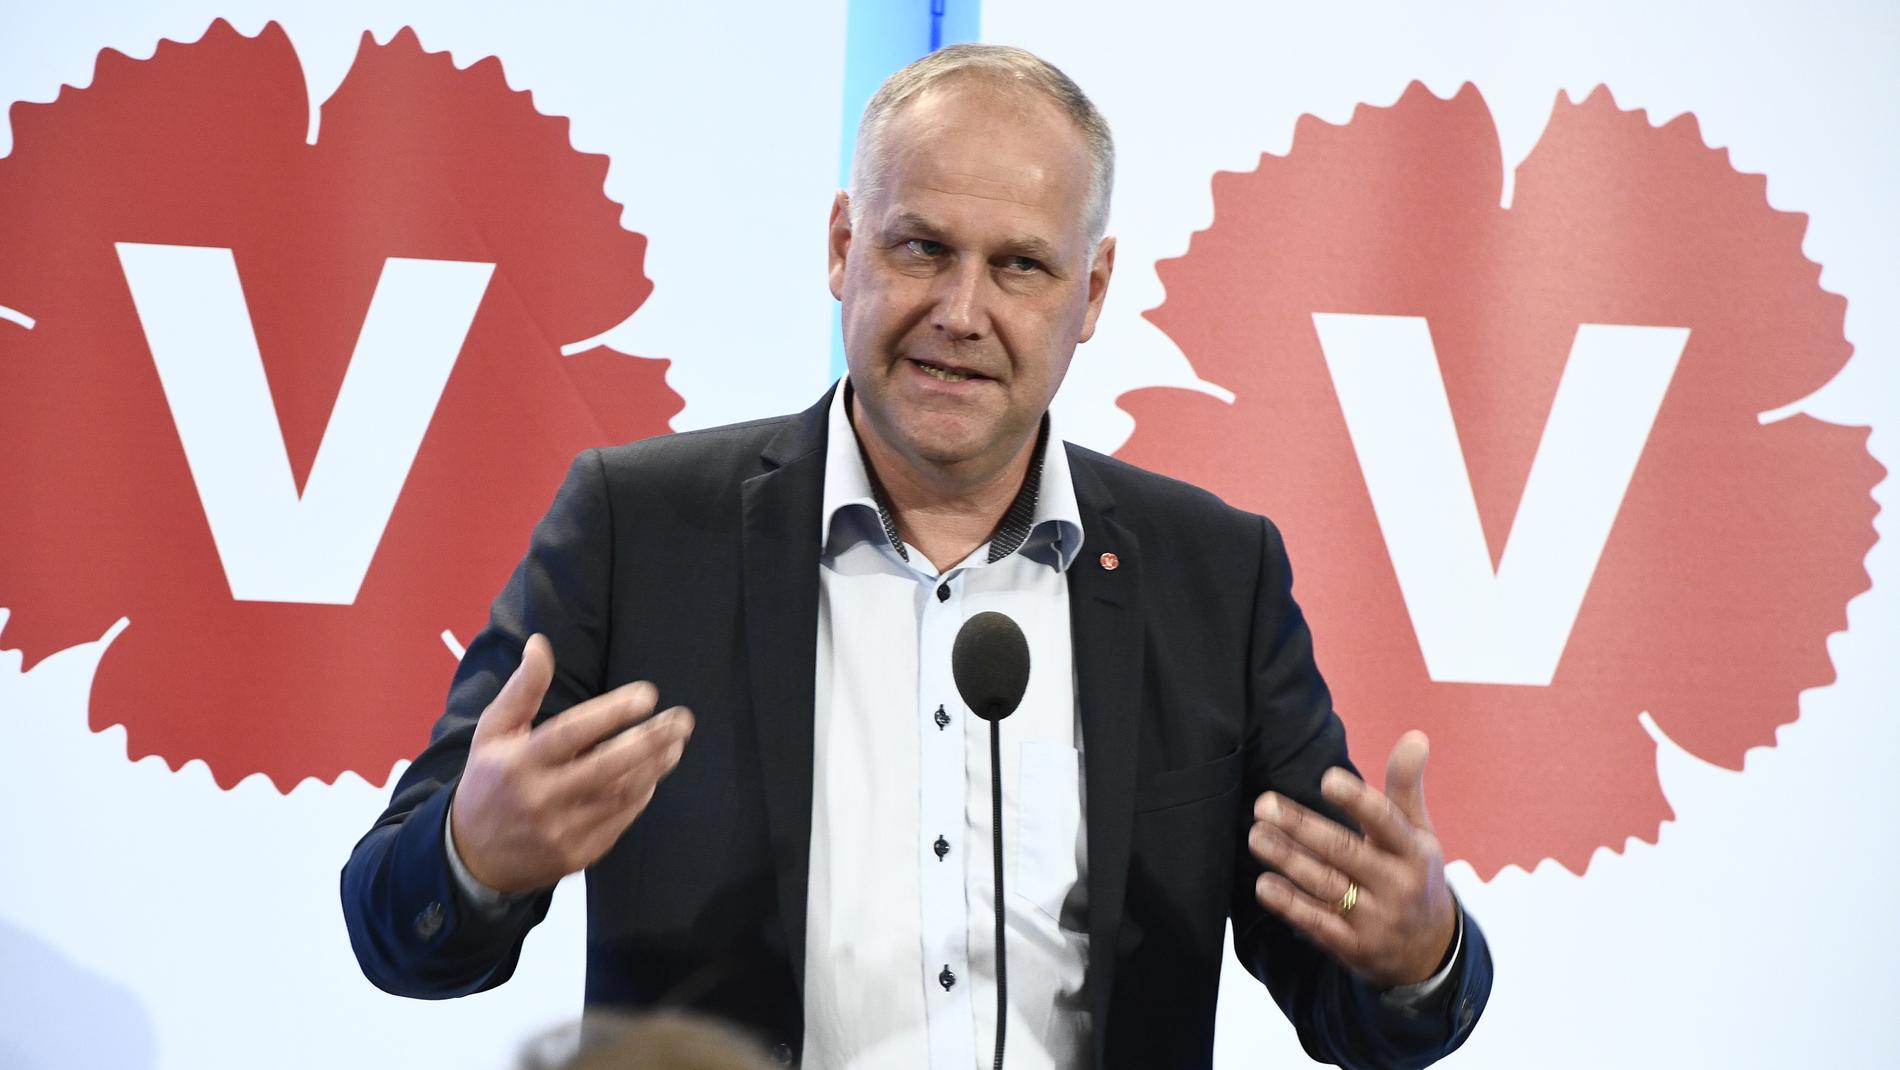 Vänsterpartiets partiledare Jonas Sjöstedt under dagens pressträff i riksdagen i Stockholm.